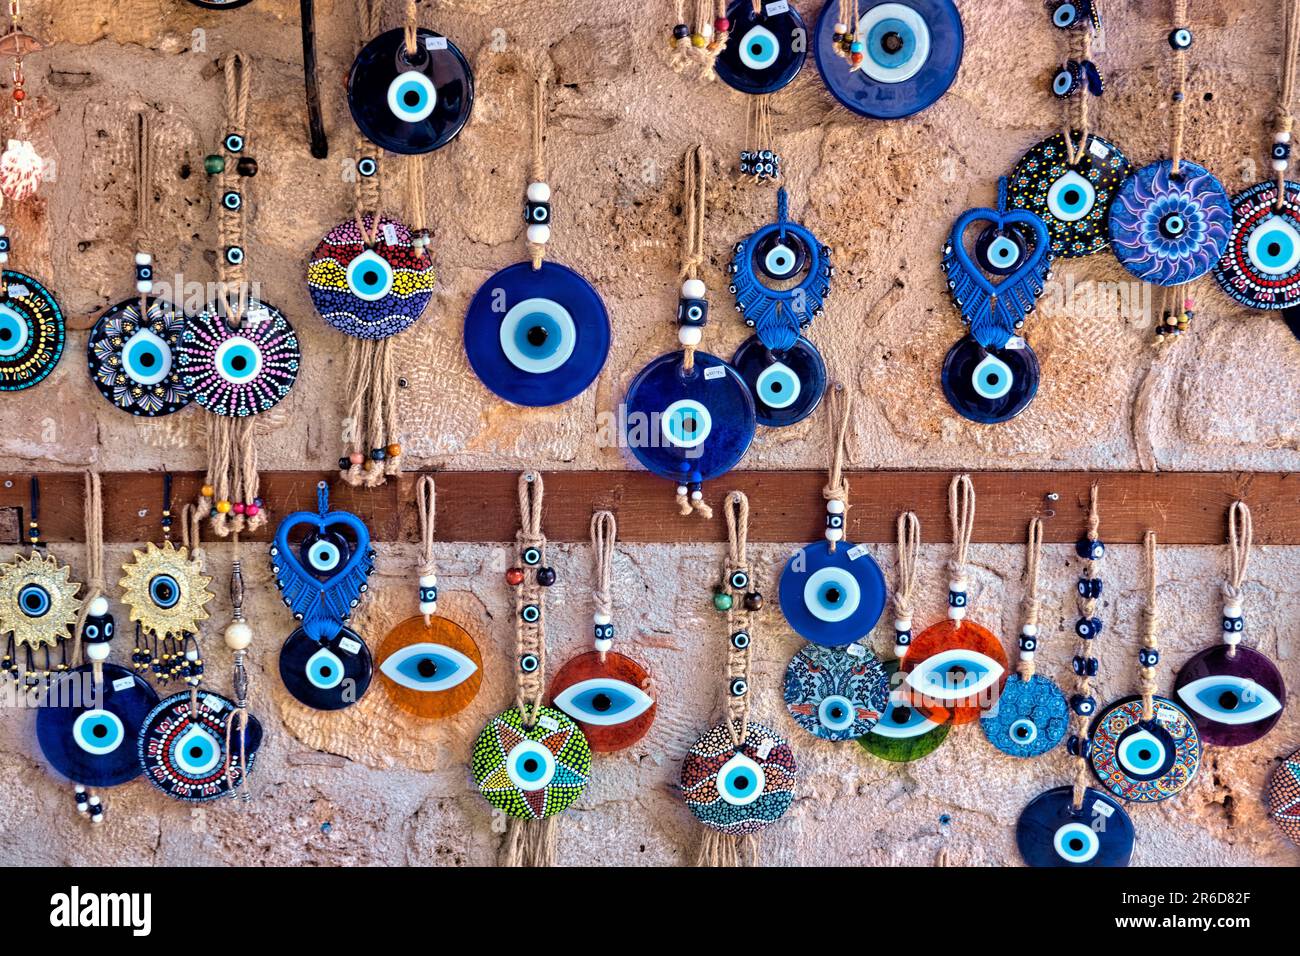 Truthahn Griechenland runde blaue böse Augen Dekoration Schmuck